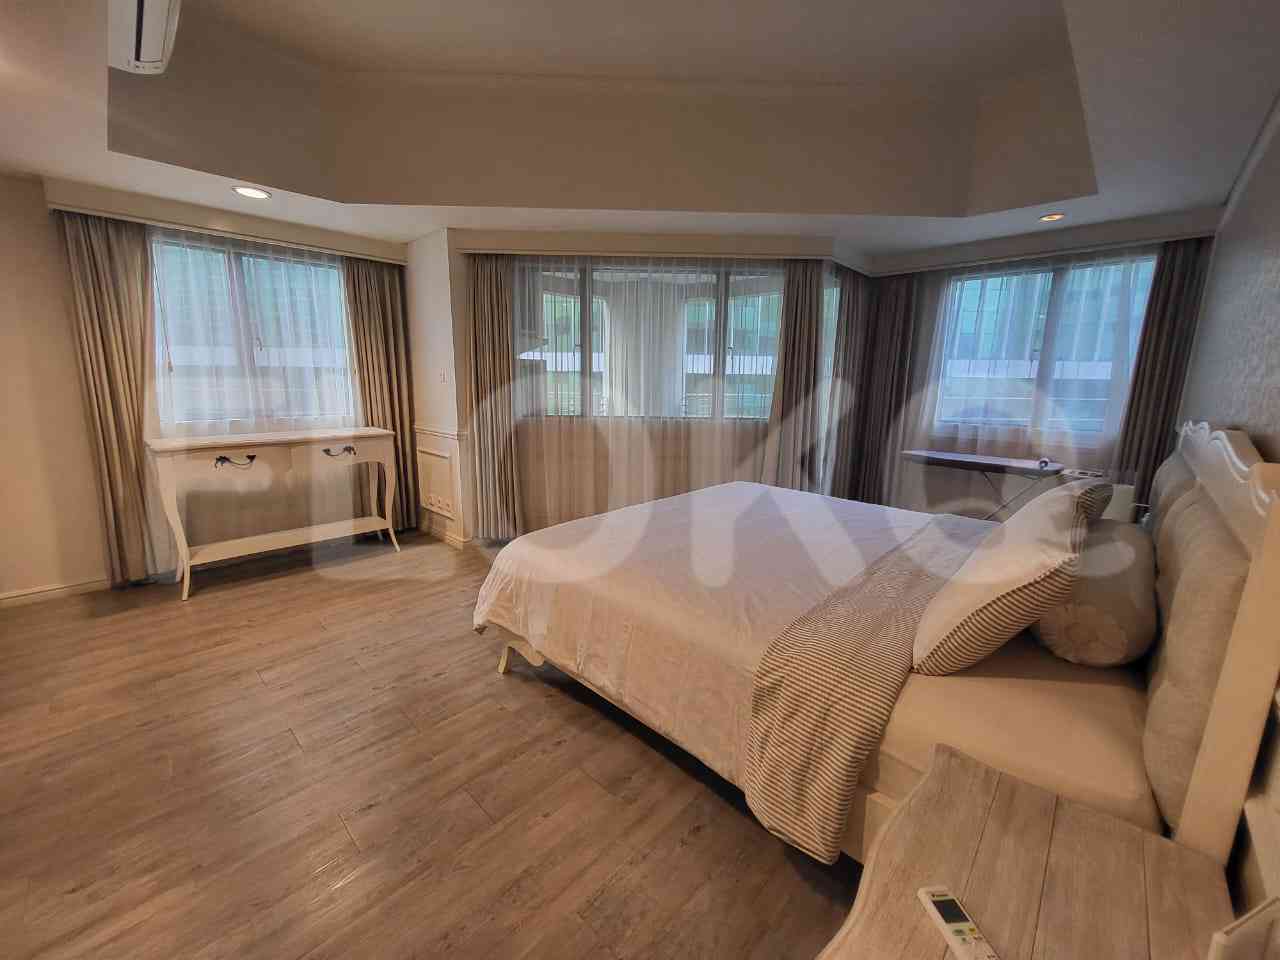 3 Bedroom on 15th Floor for Rent in Apartemen Setiabudi - fku247 5